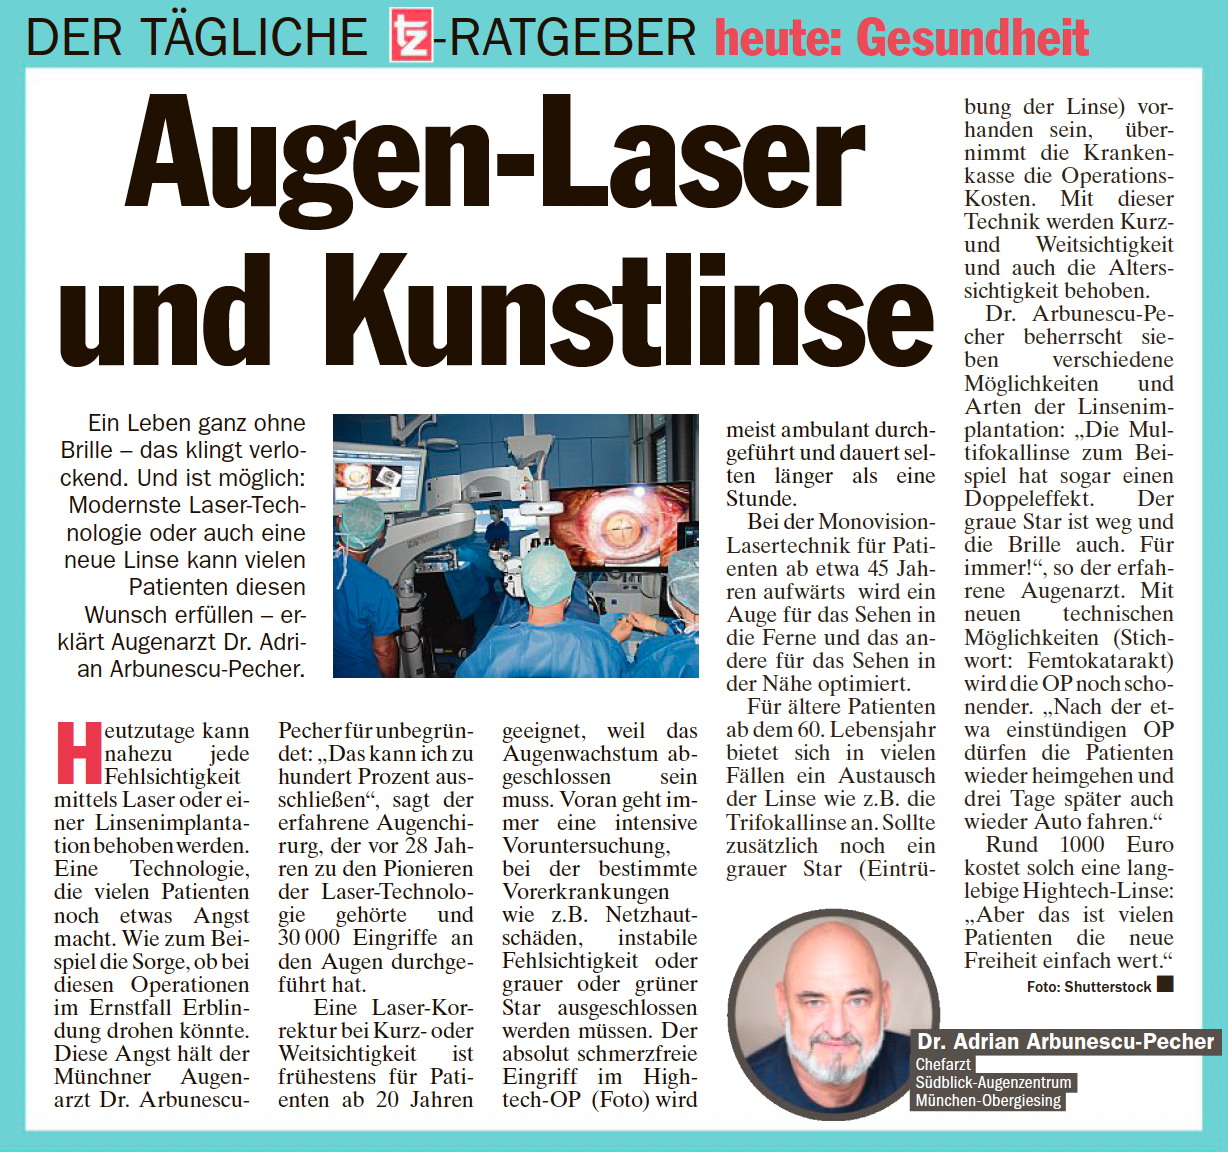 Augen-Laser und Kustlinse - Augenklink Augsburg